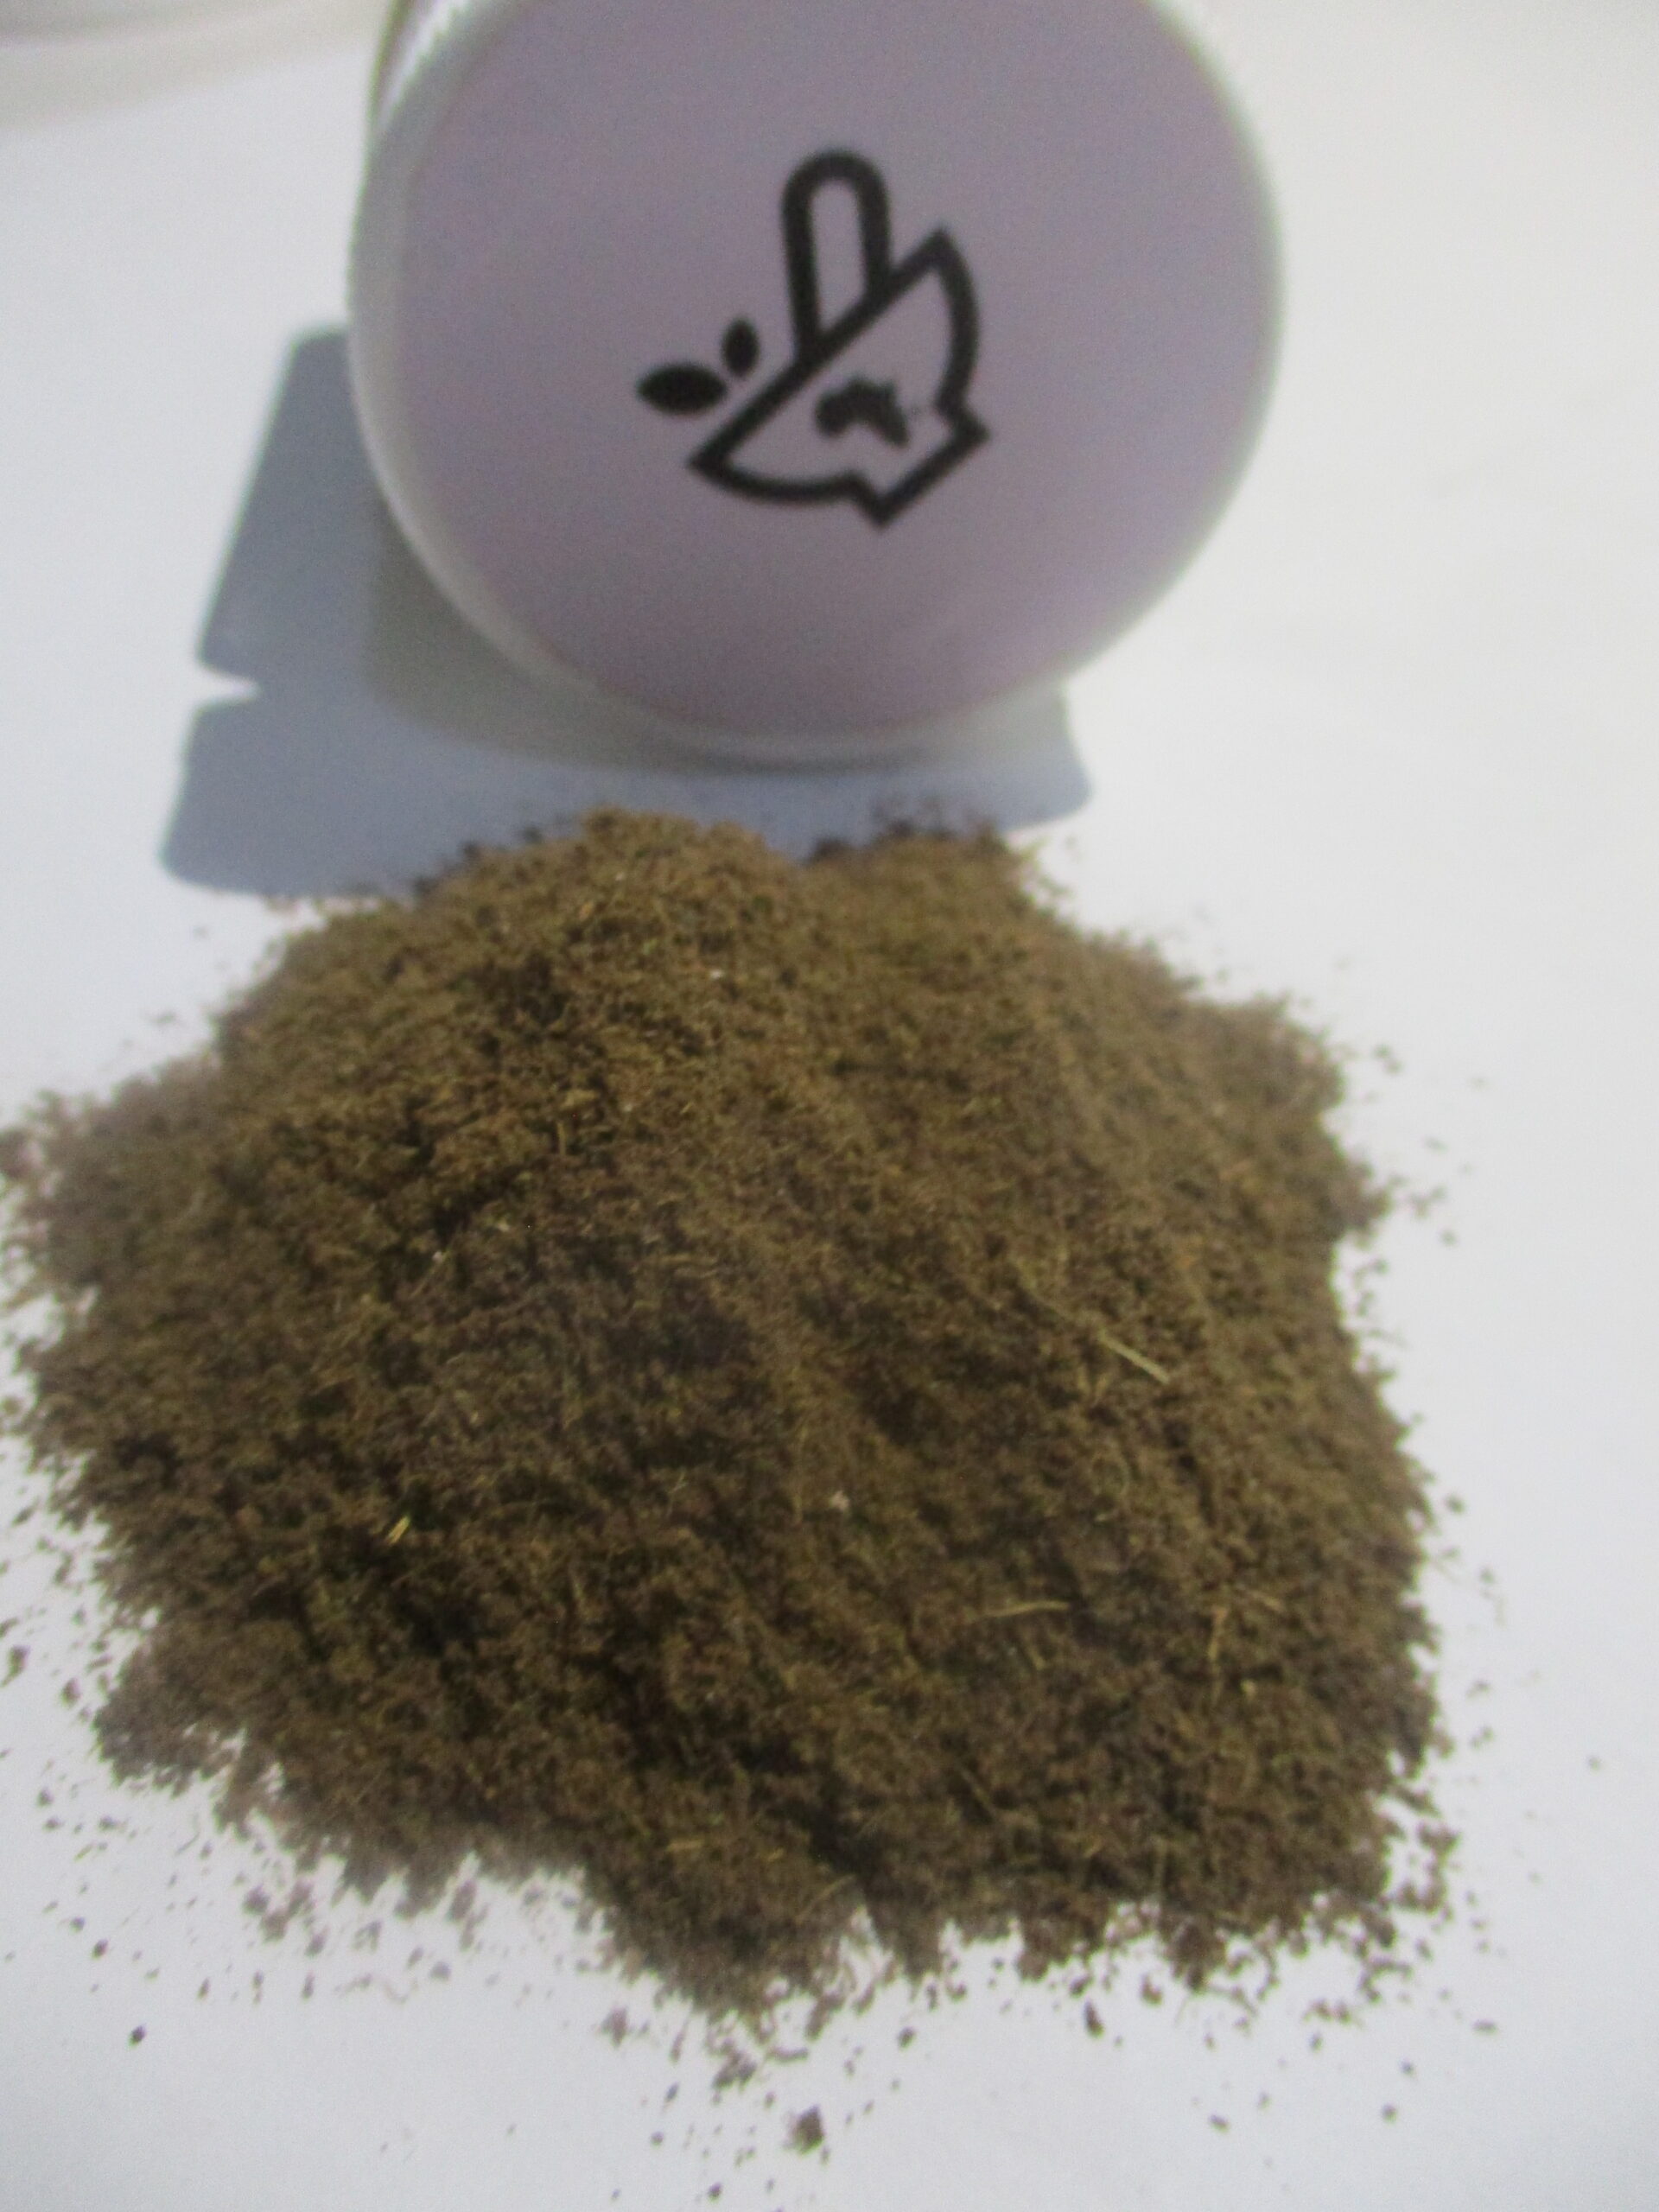 Ikalamuzi powder